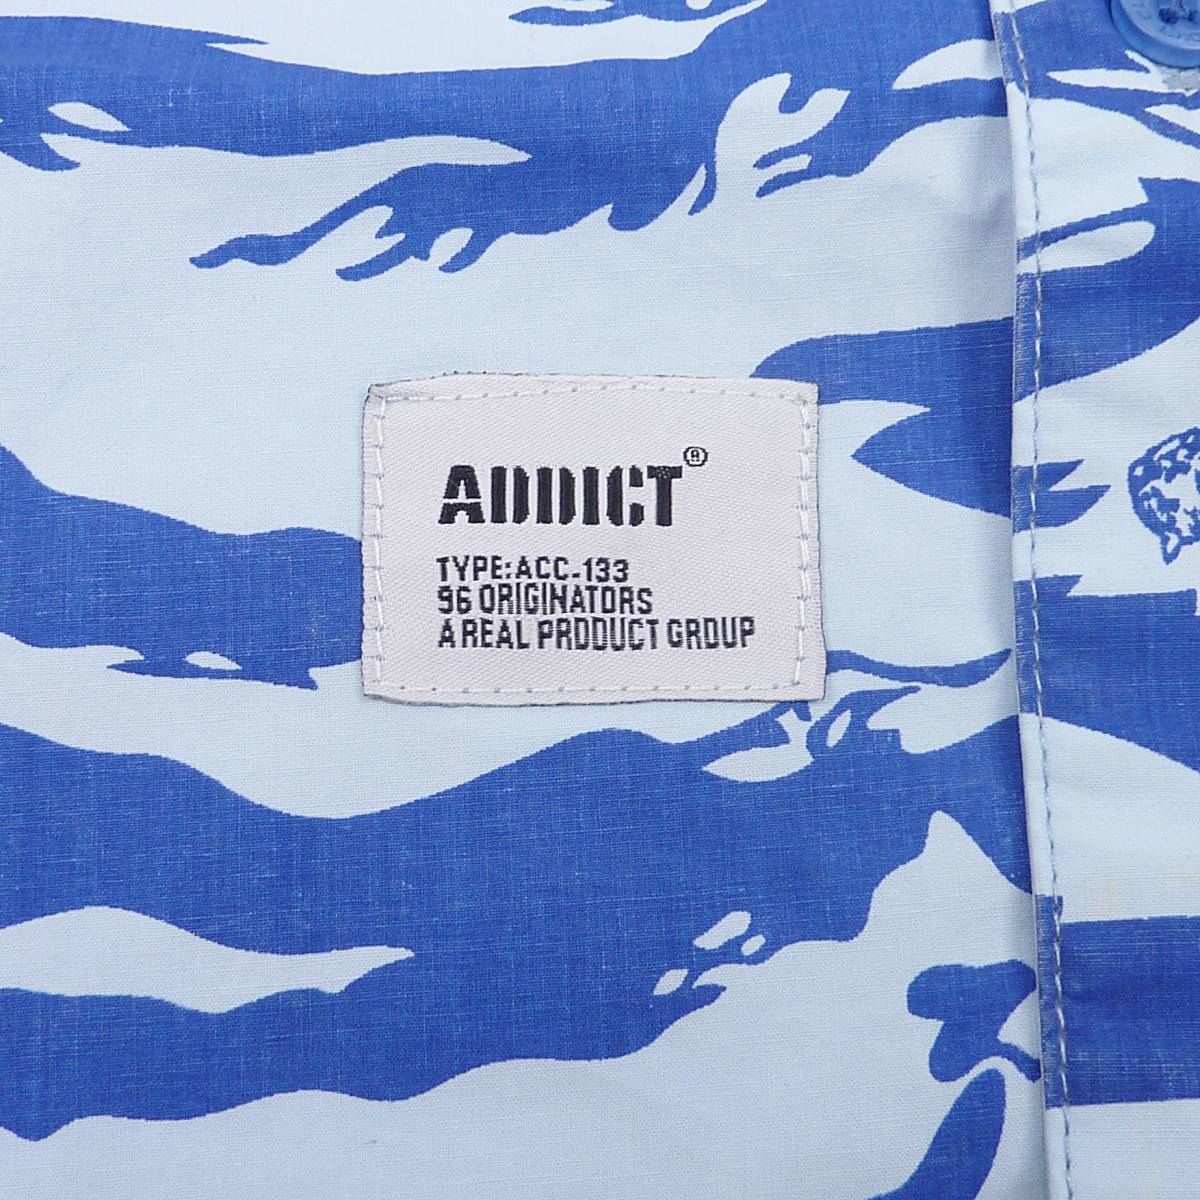 Addict アディクト TONAL TIGER S/S LV CPO SHIRT 半袖 ボタンシャツ (ブルー) (M) [並行輸入品]_画像5